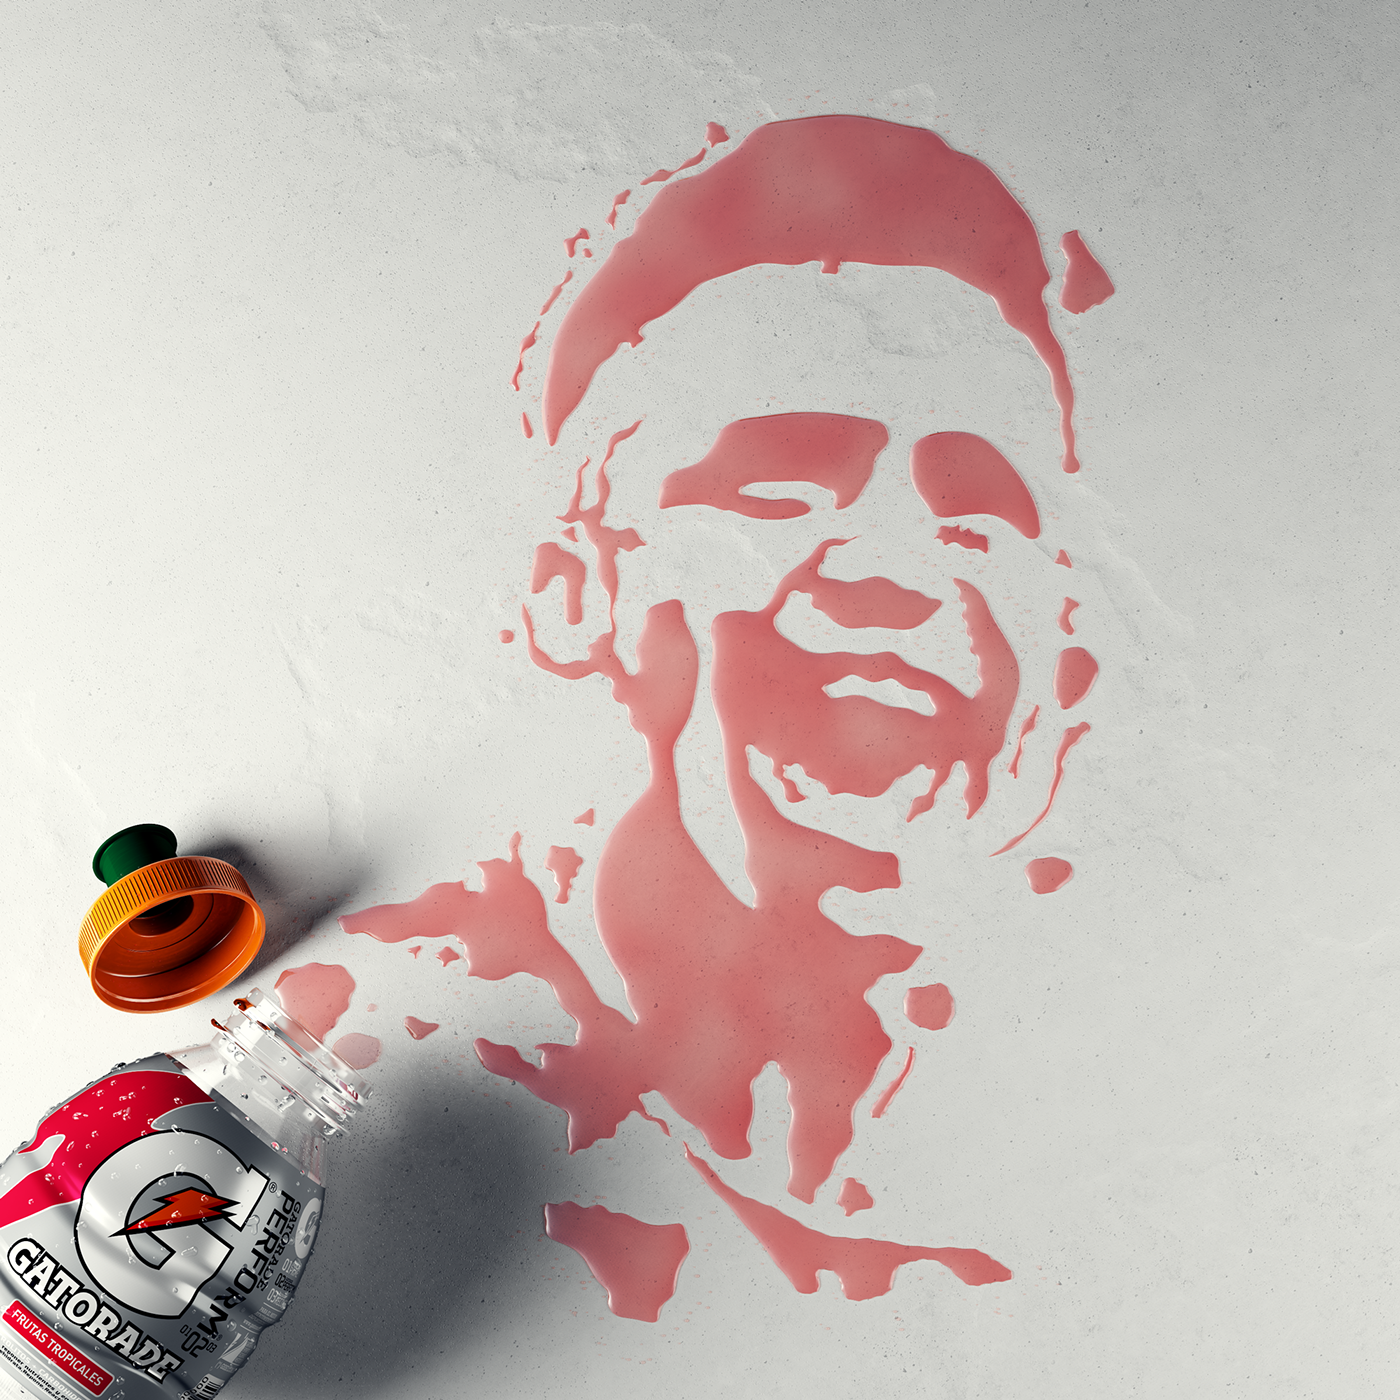 alexis gatorade spills art Work  red portrait face stencil fluids Liquid